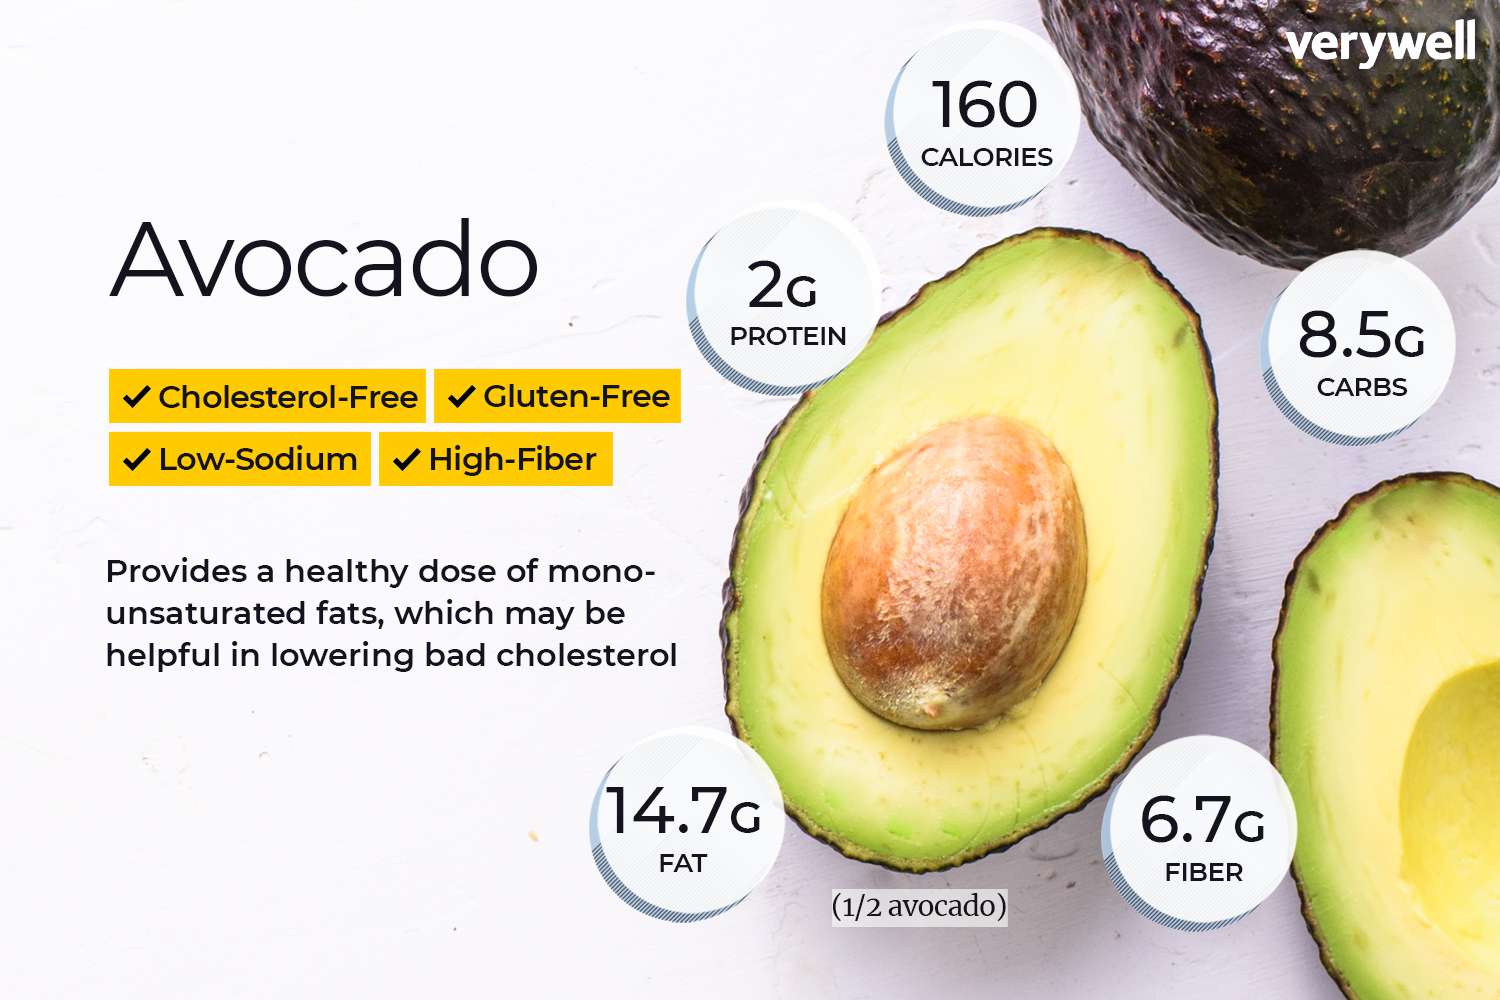 avocado voedingsfeiten en gezondheidsvoordelen